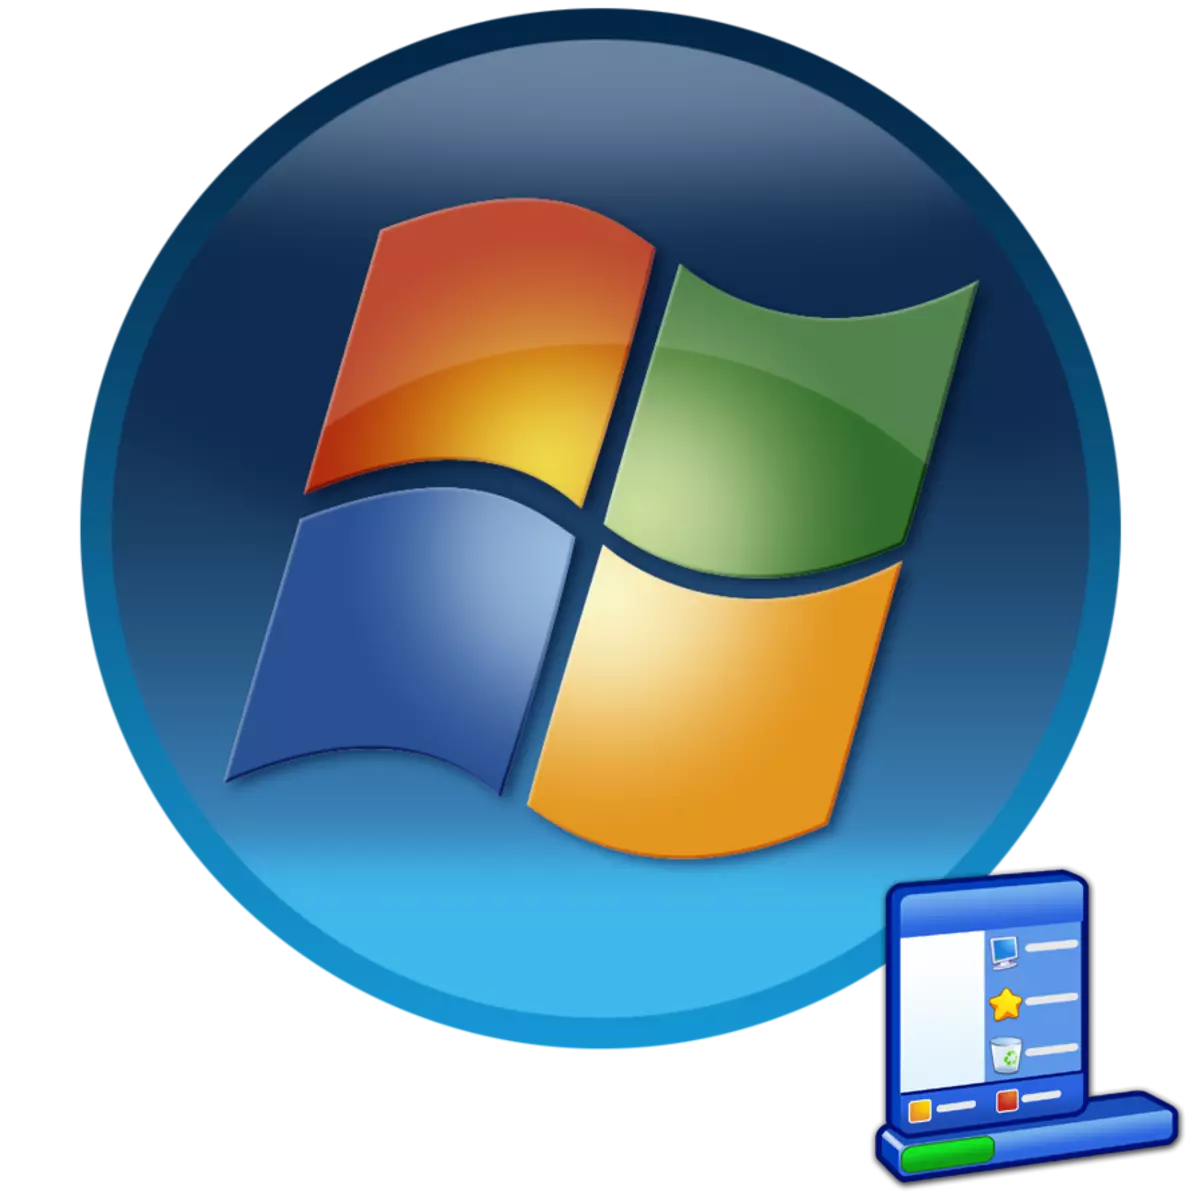 Endre oppgavelinjen i Windows 7